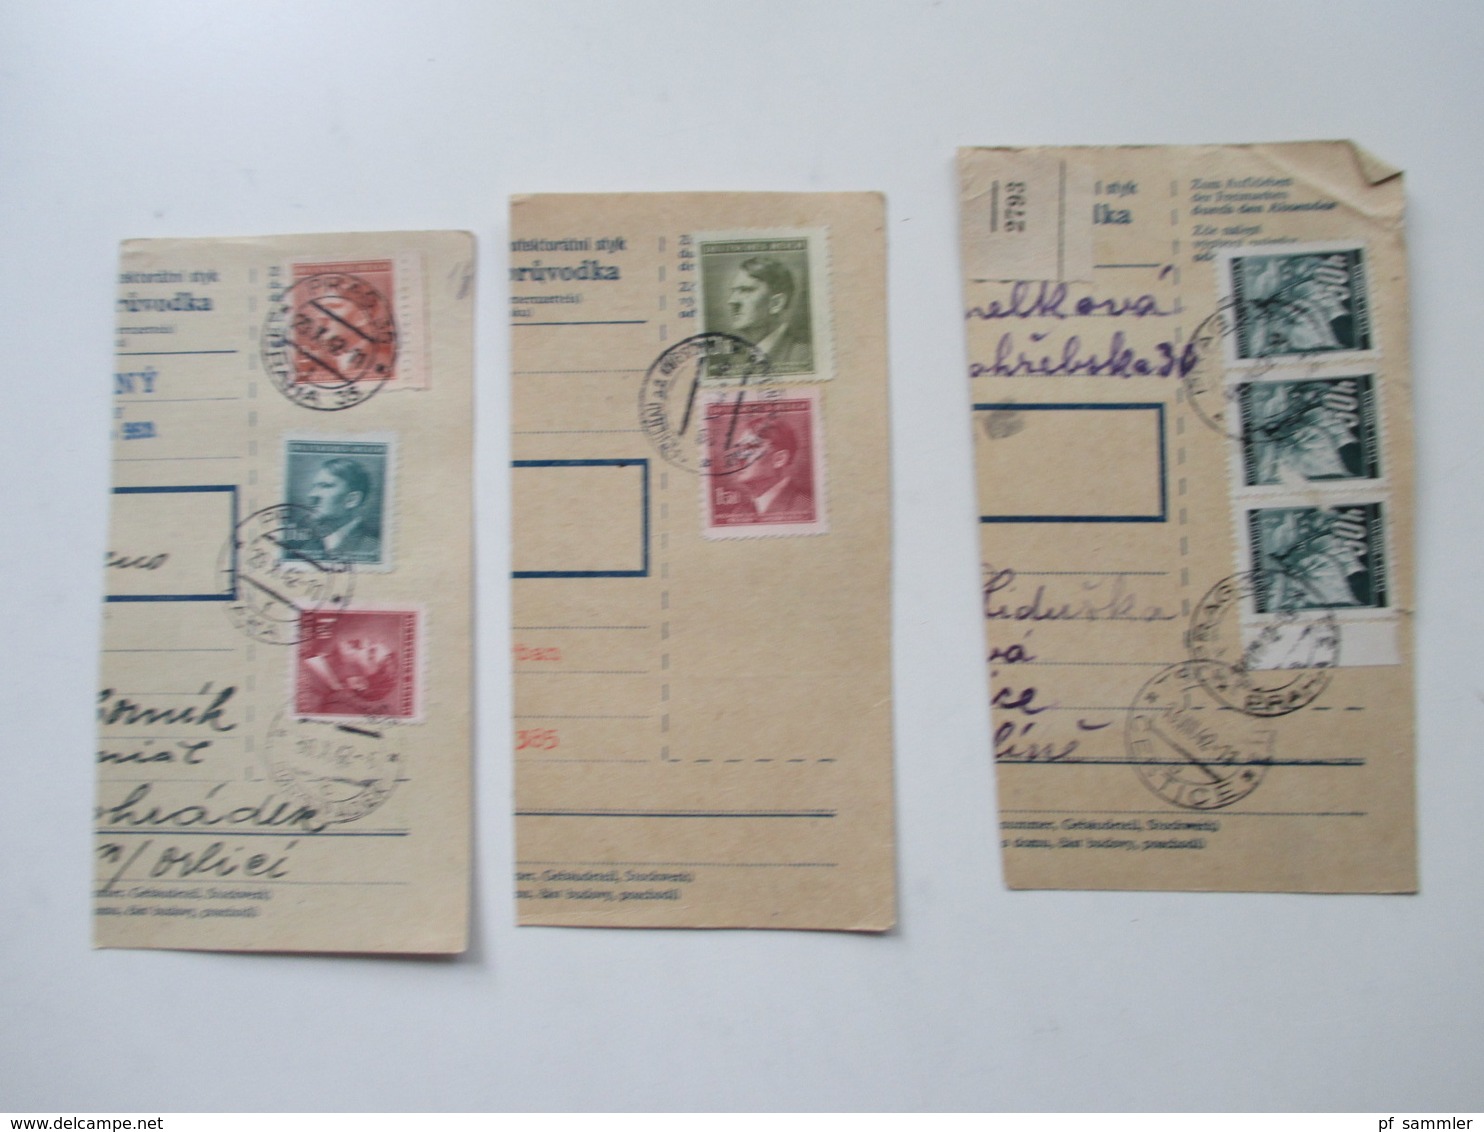 Böhmen und Mähren Paketkarten / Postanweisung Abschnitte 147 Stück! Schöne Frankaturen! Randstücke! Fundgrube! Perfins